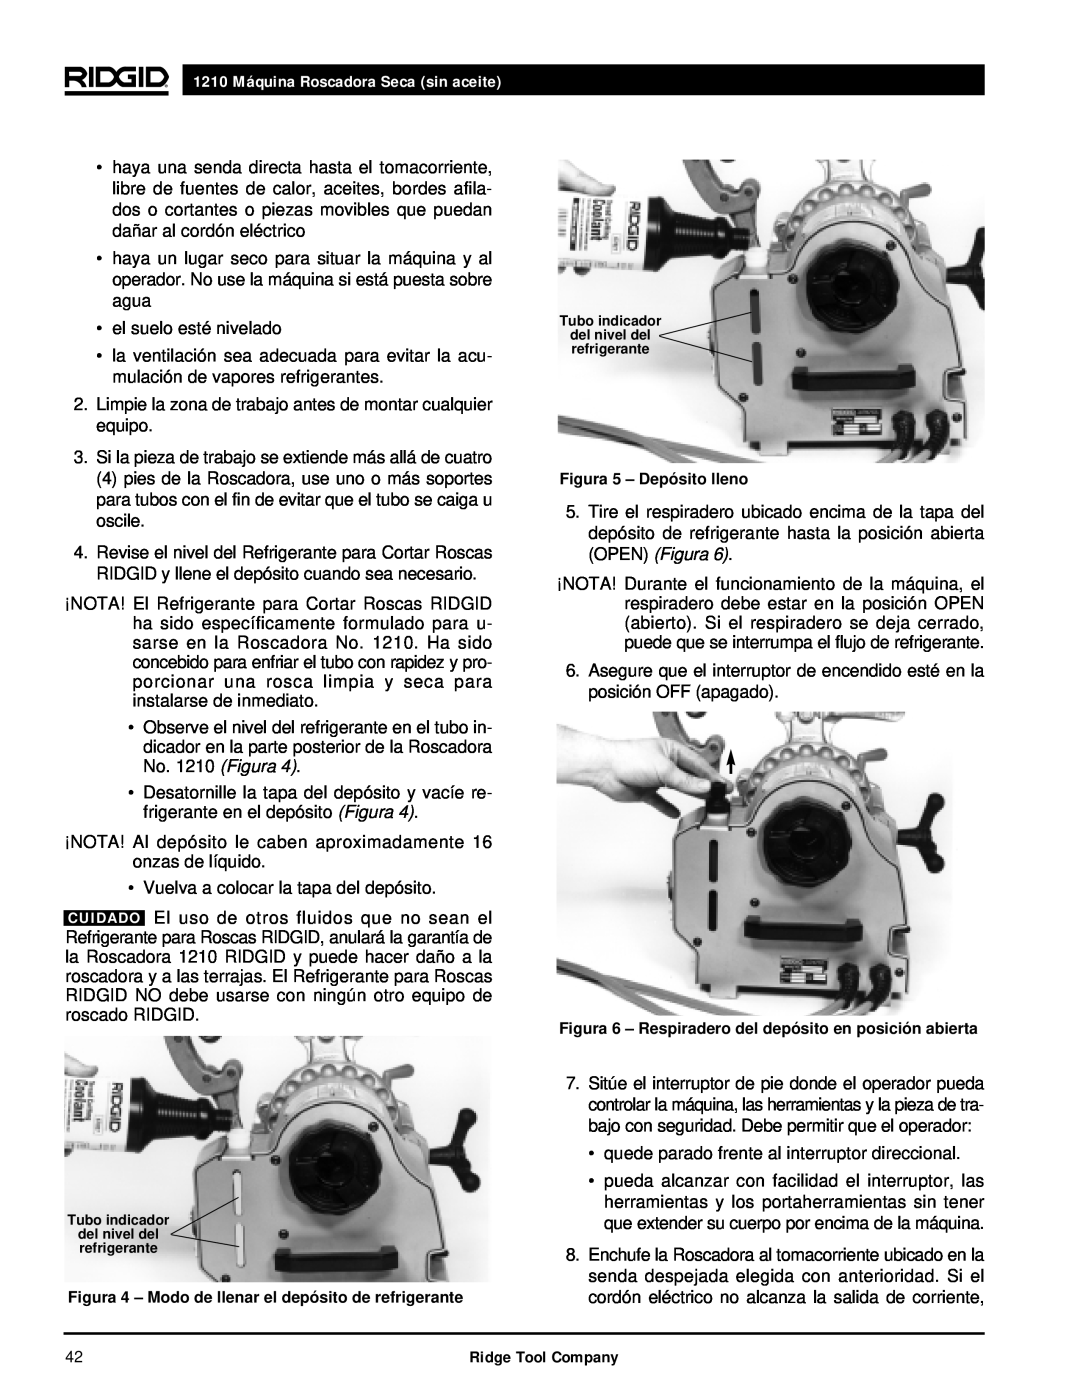 RIDGID manual 1210 Máquina Roscadora Seca sin aceite, el suelo esté nivelado 